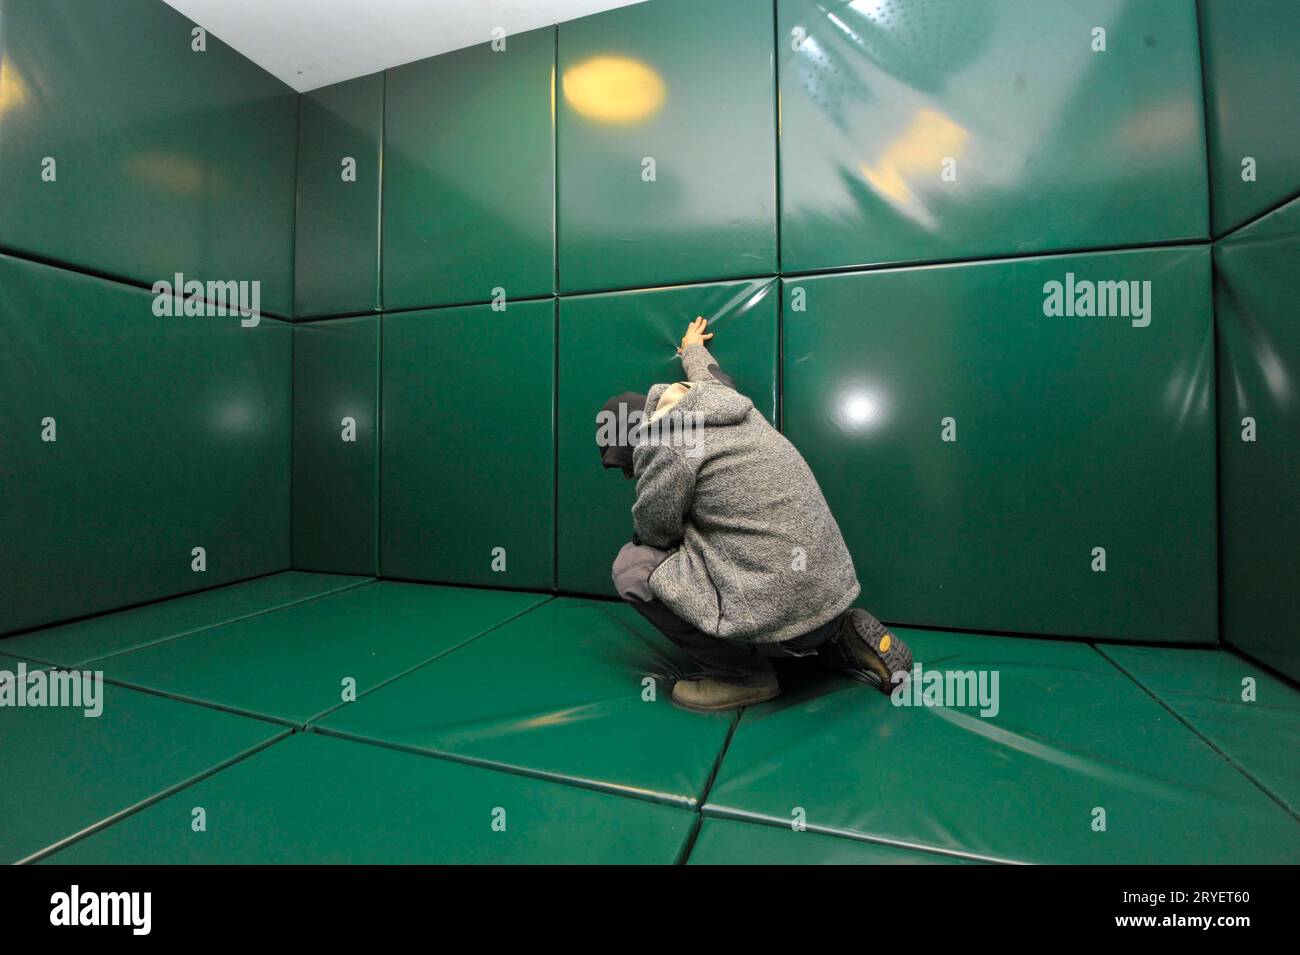 un homme s'agenouille seul dans une cellule rembourrée verte Banque D'Images